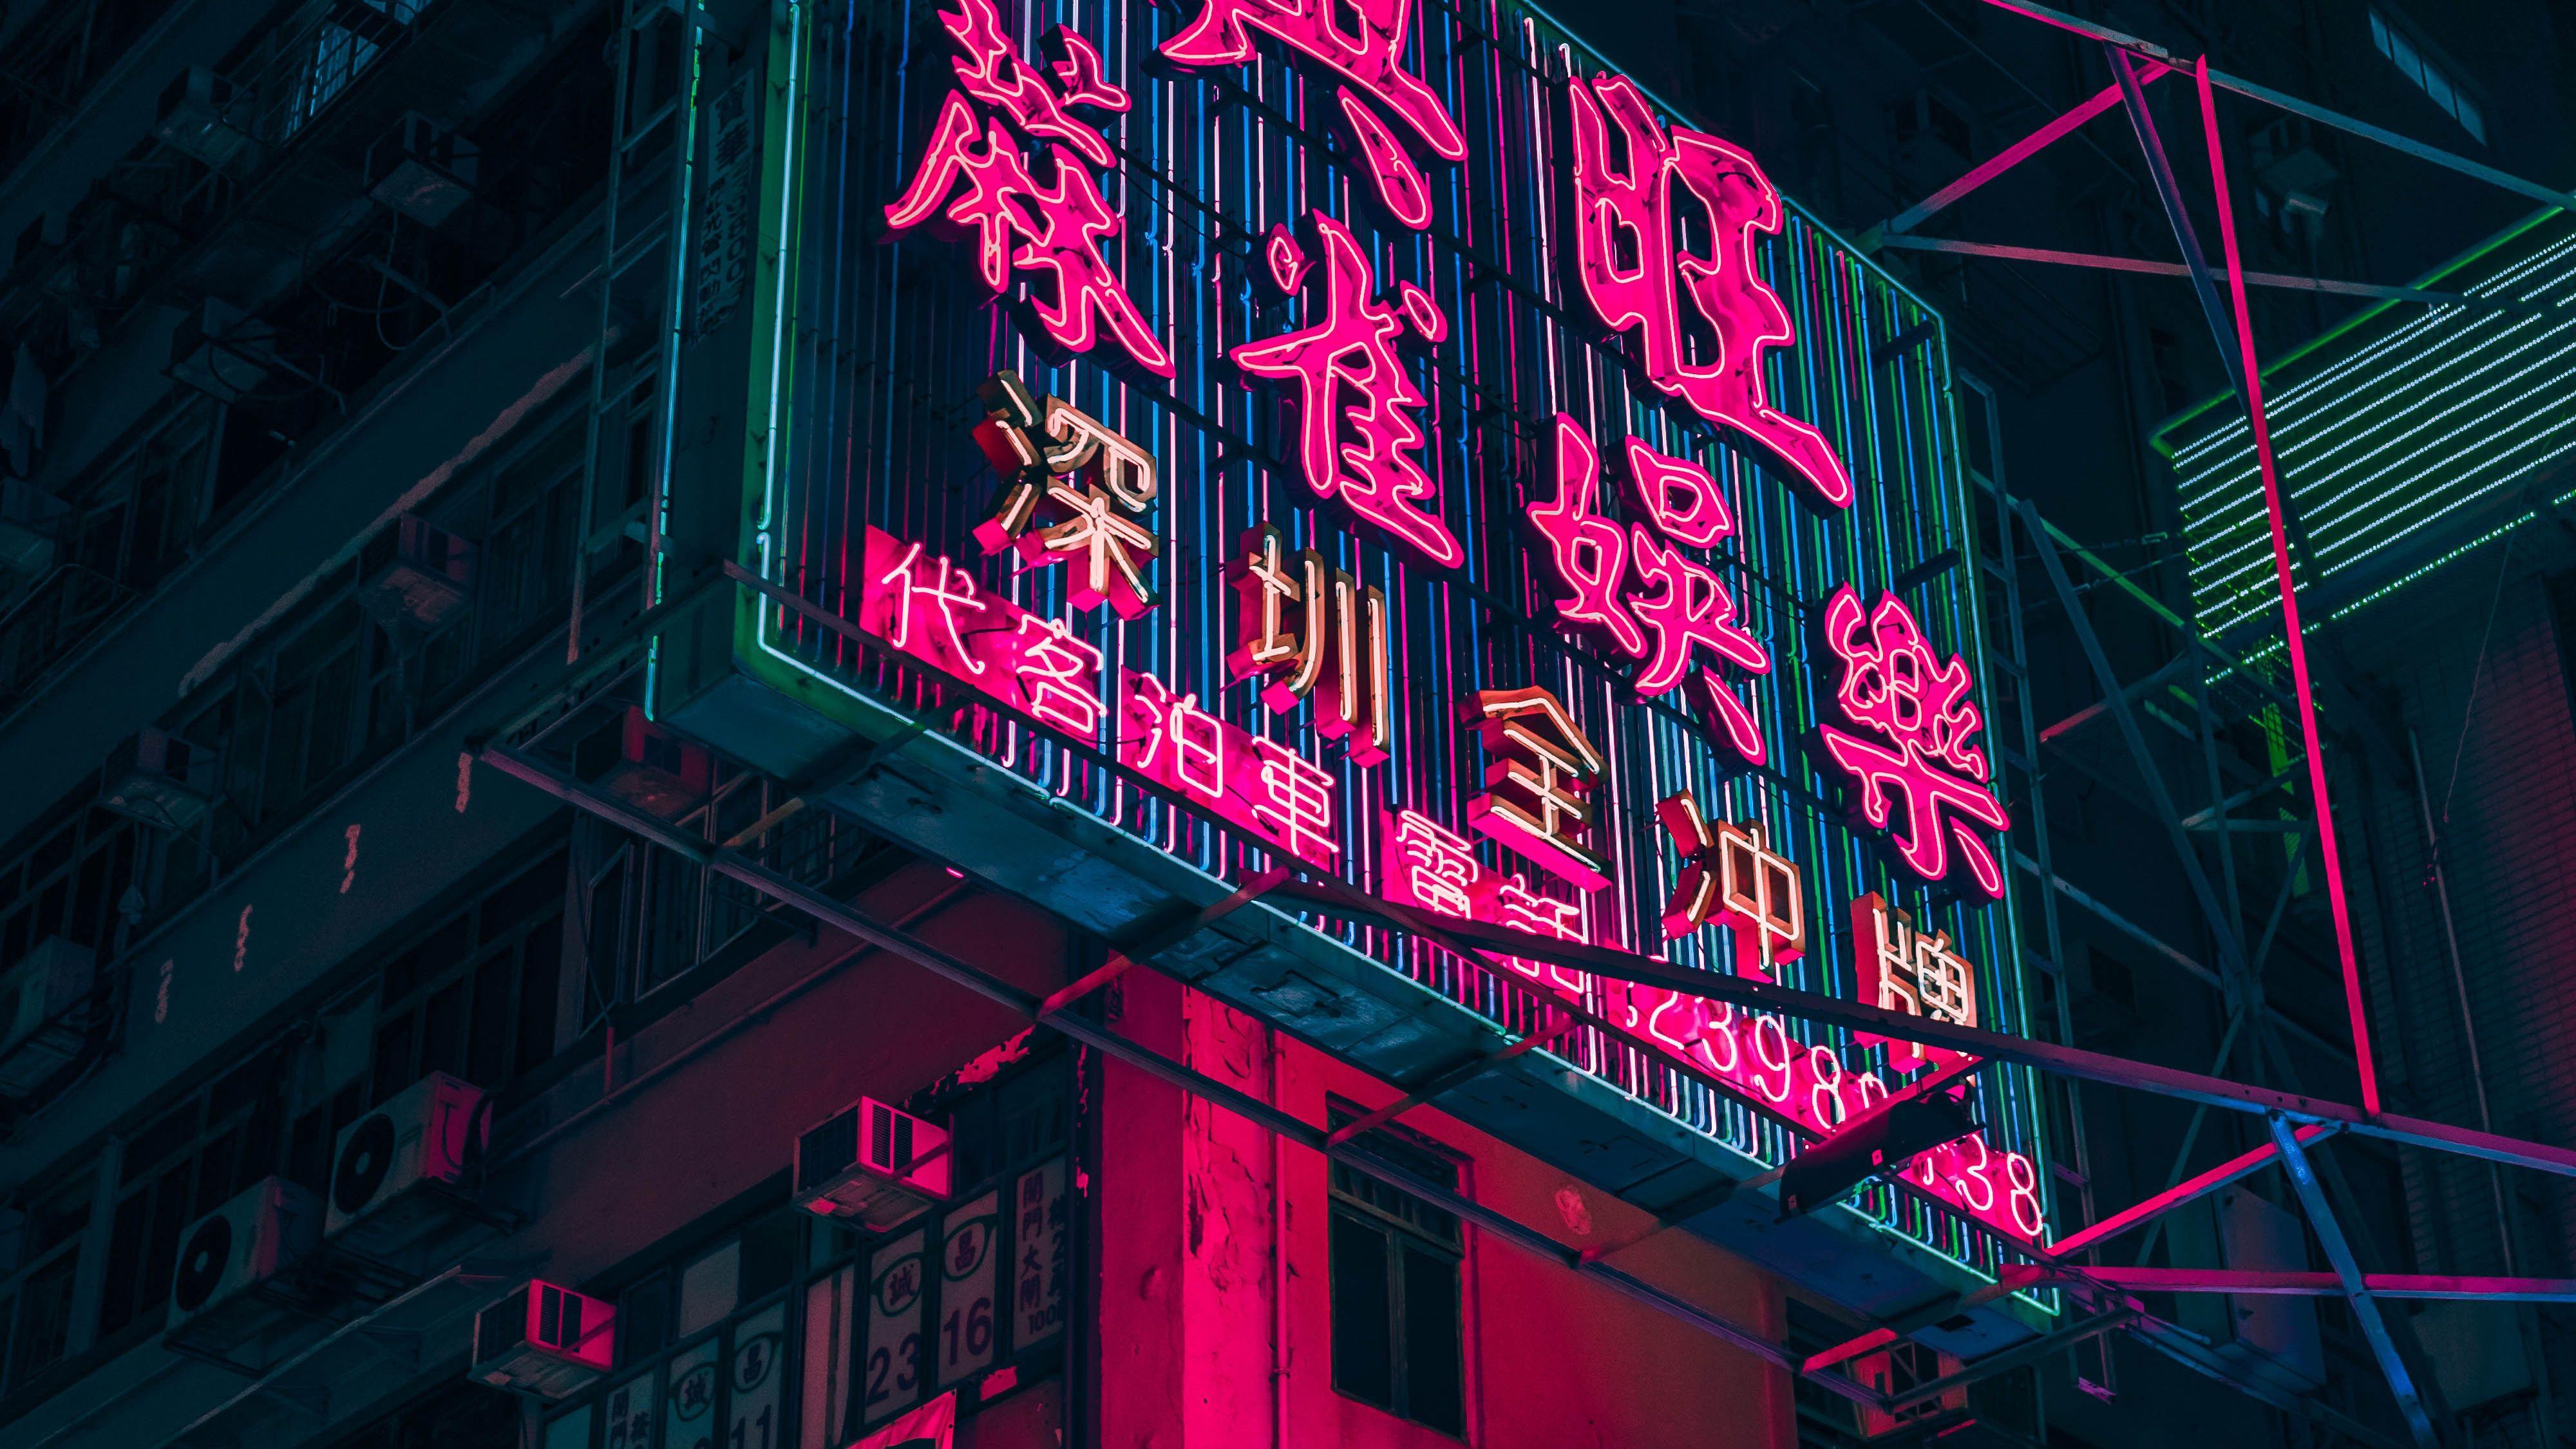 Hong Kong City Neon City, HD World, 4k Wallpapers, Image